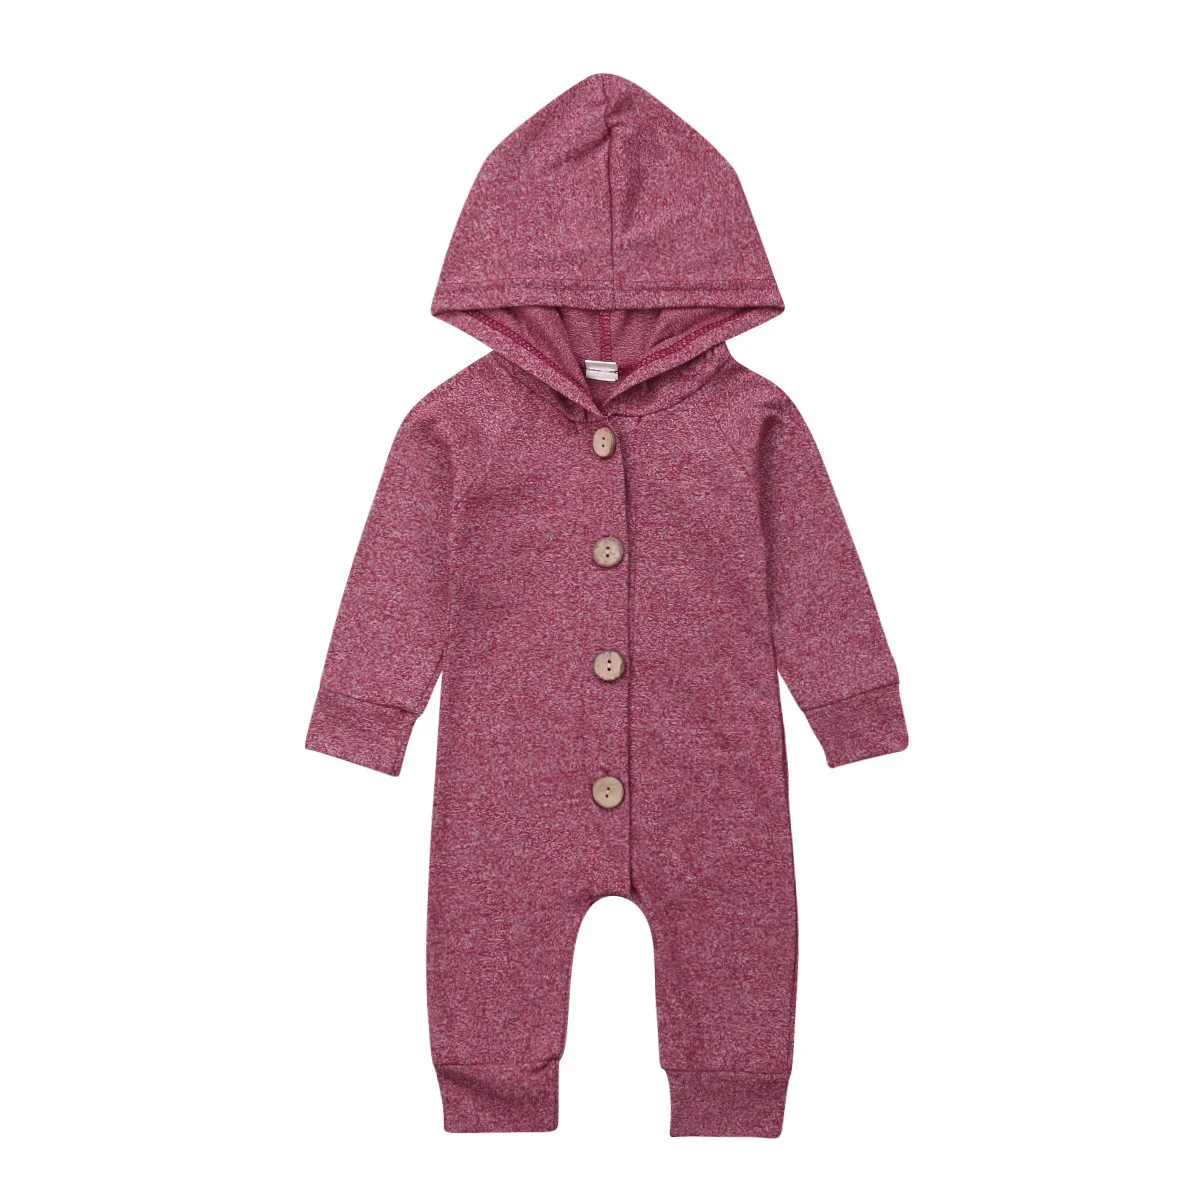 Одежда для малышей на пуговицах, хлопковые детские комбинезоны с капюшоном и длинными рукавами для мальчиков и девочек, детский комбинезон, Одежда для новорожденных, повседневная одежда для детей 0-24 месяцев - Цвет: Фиолетовый